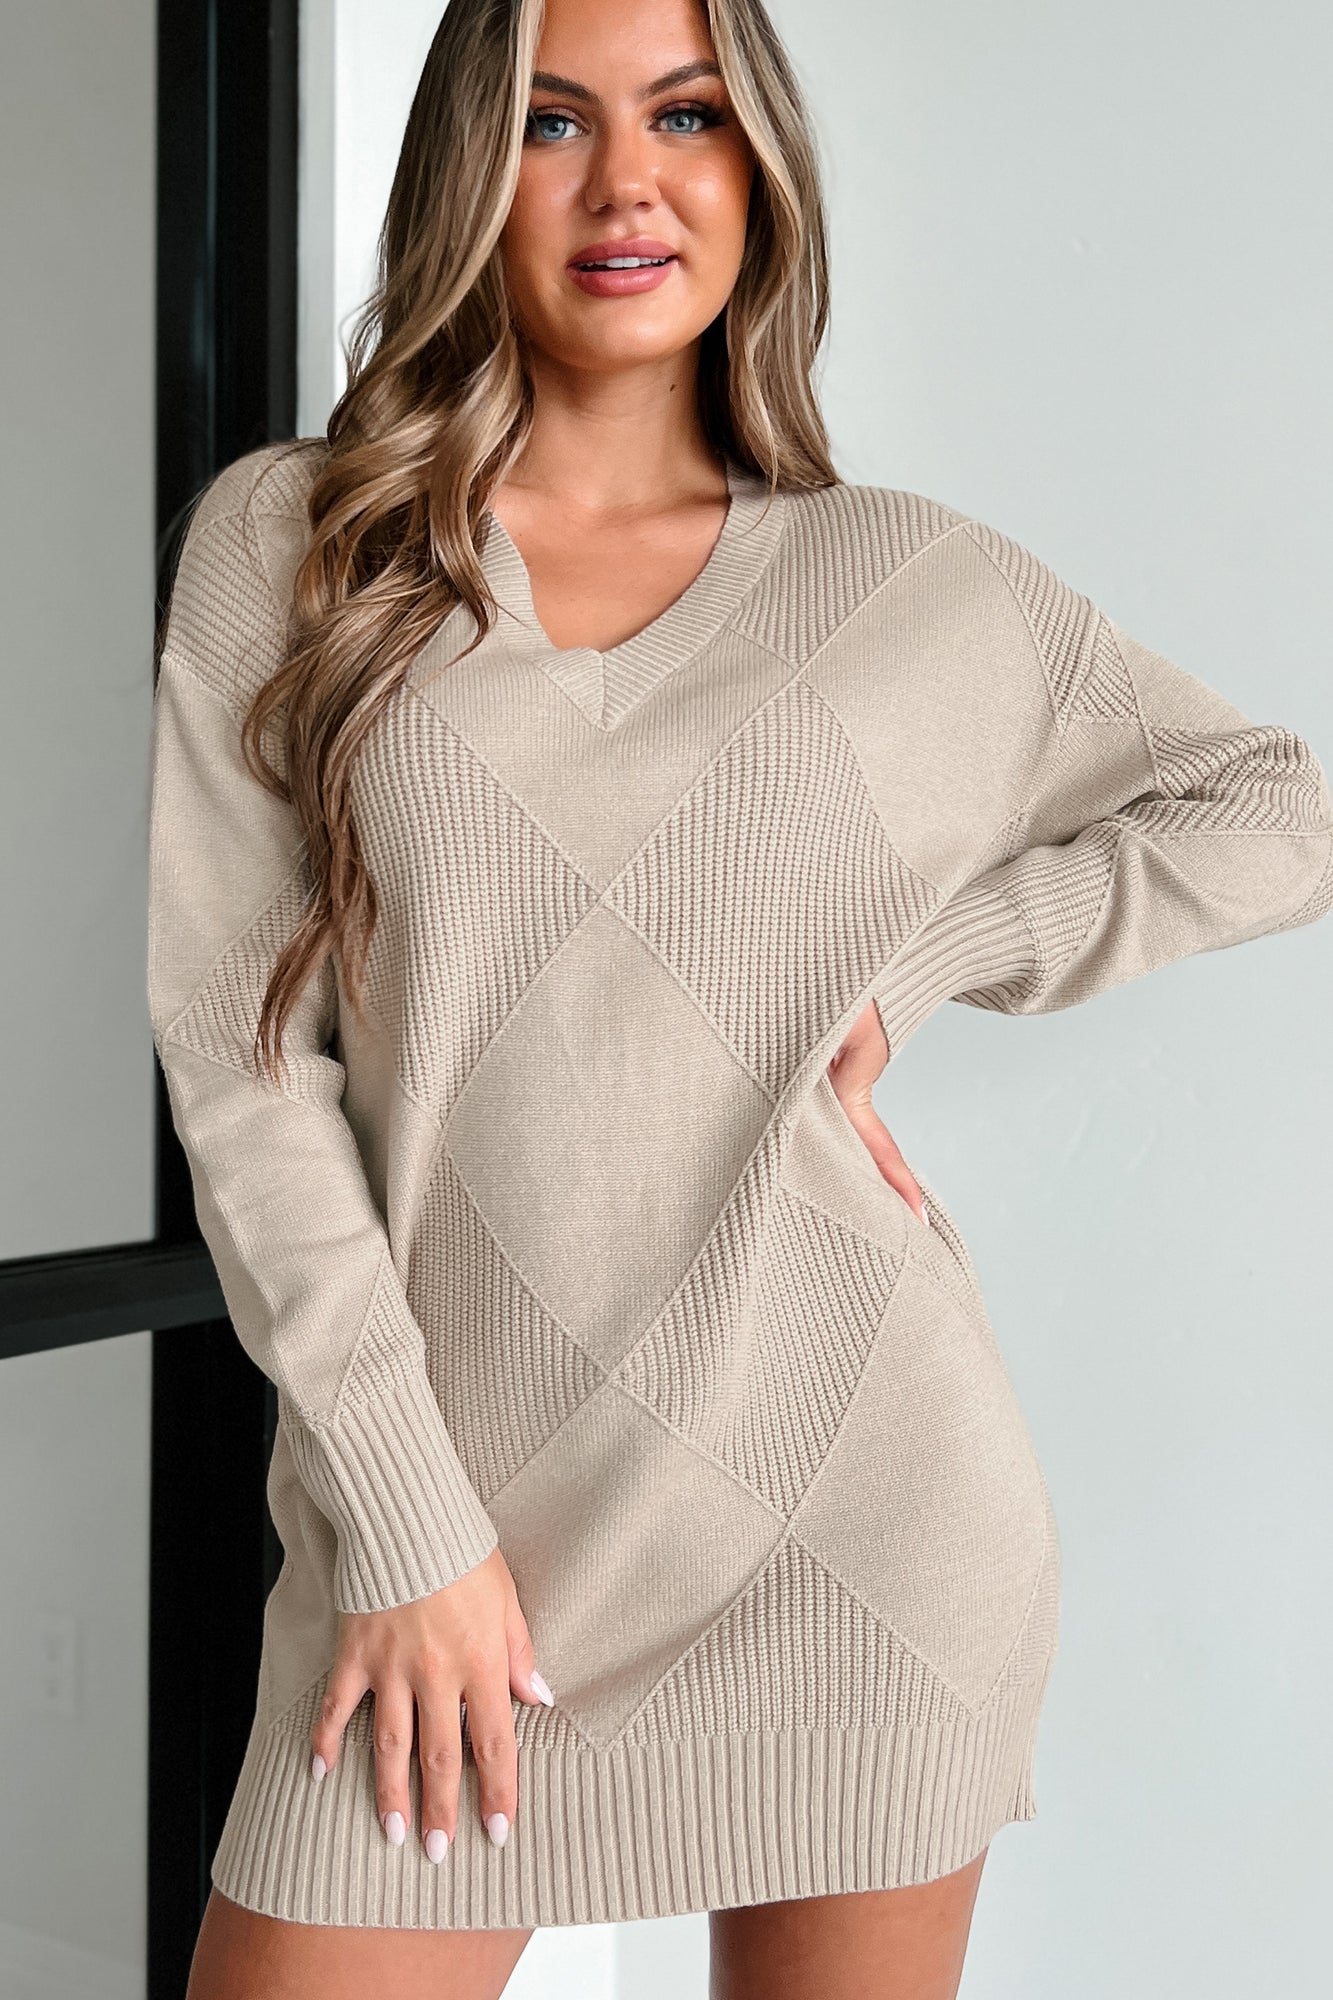 The Right Angle Diamond Pattern Sweater Dress (Taupe) - NanaMacs